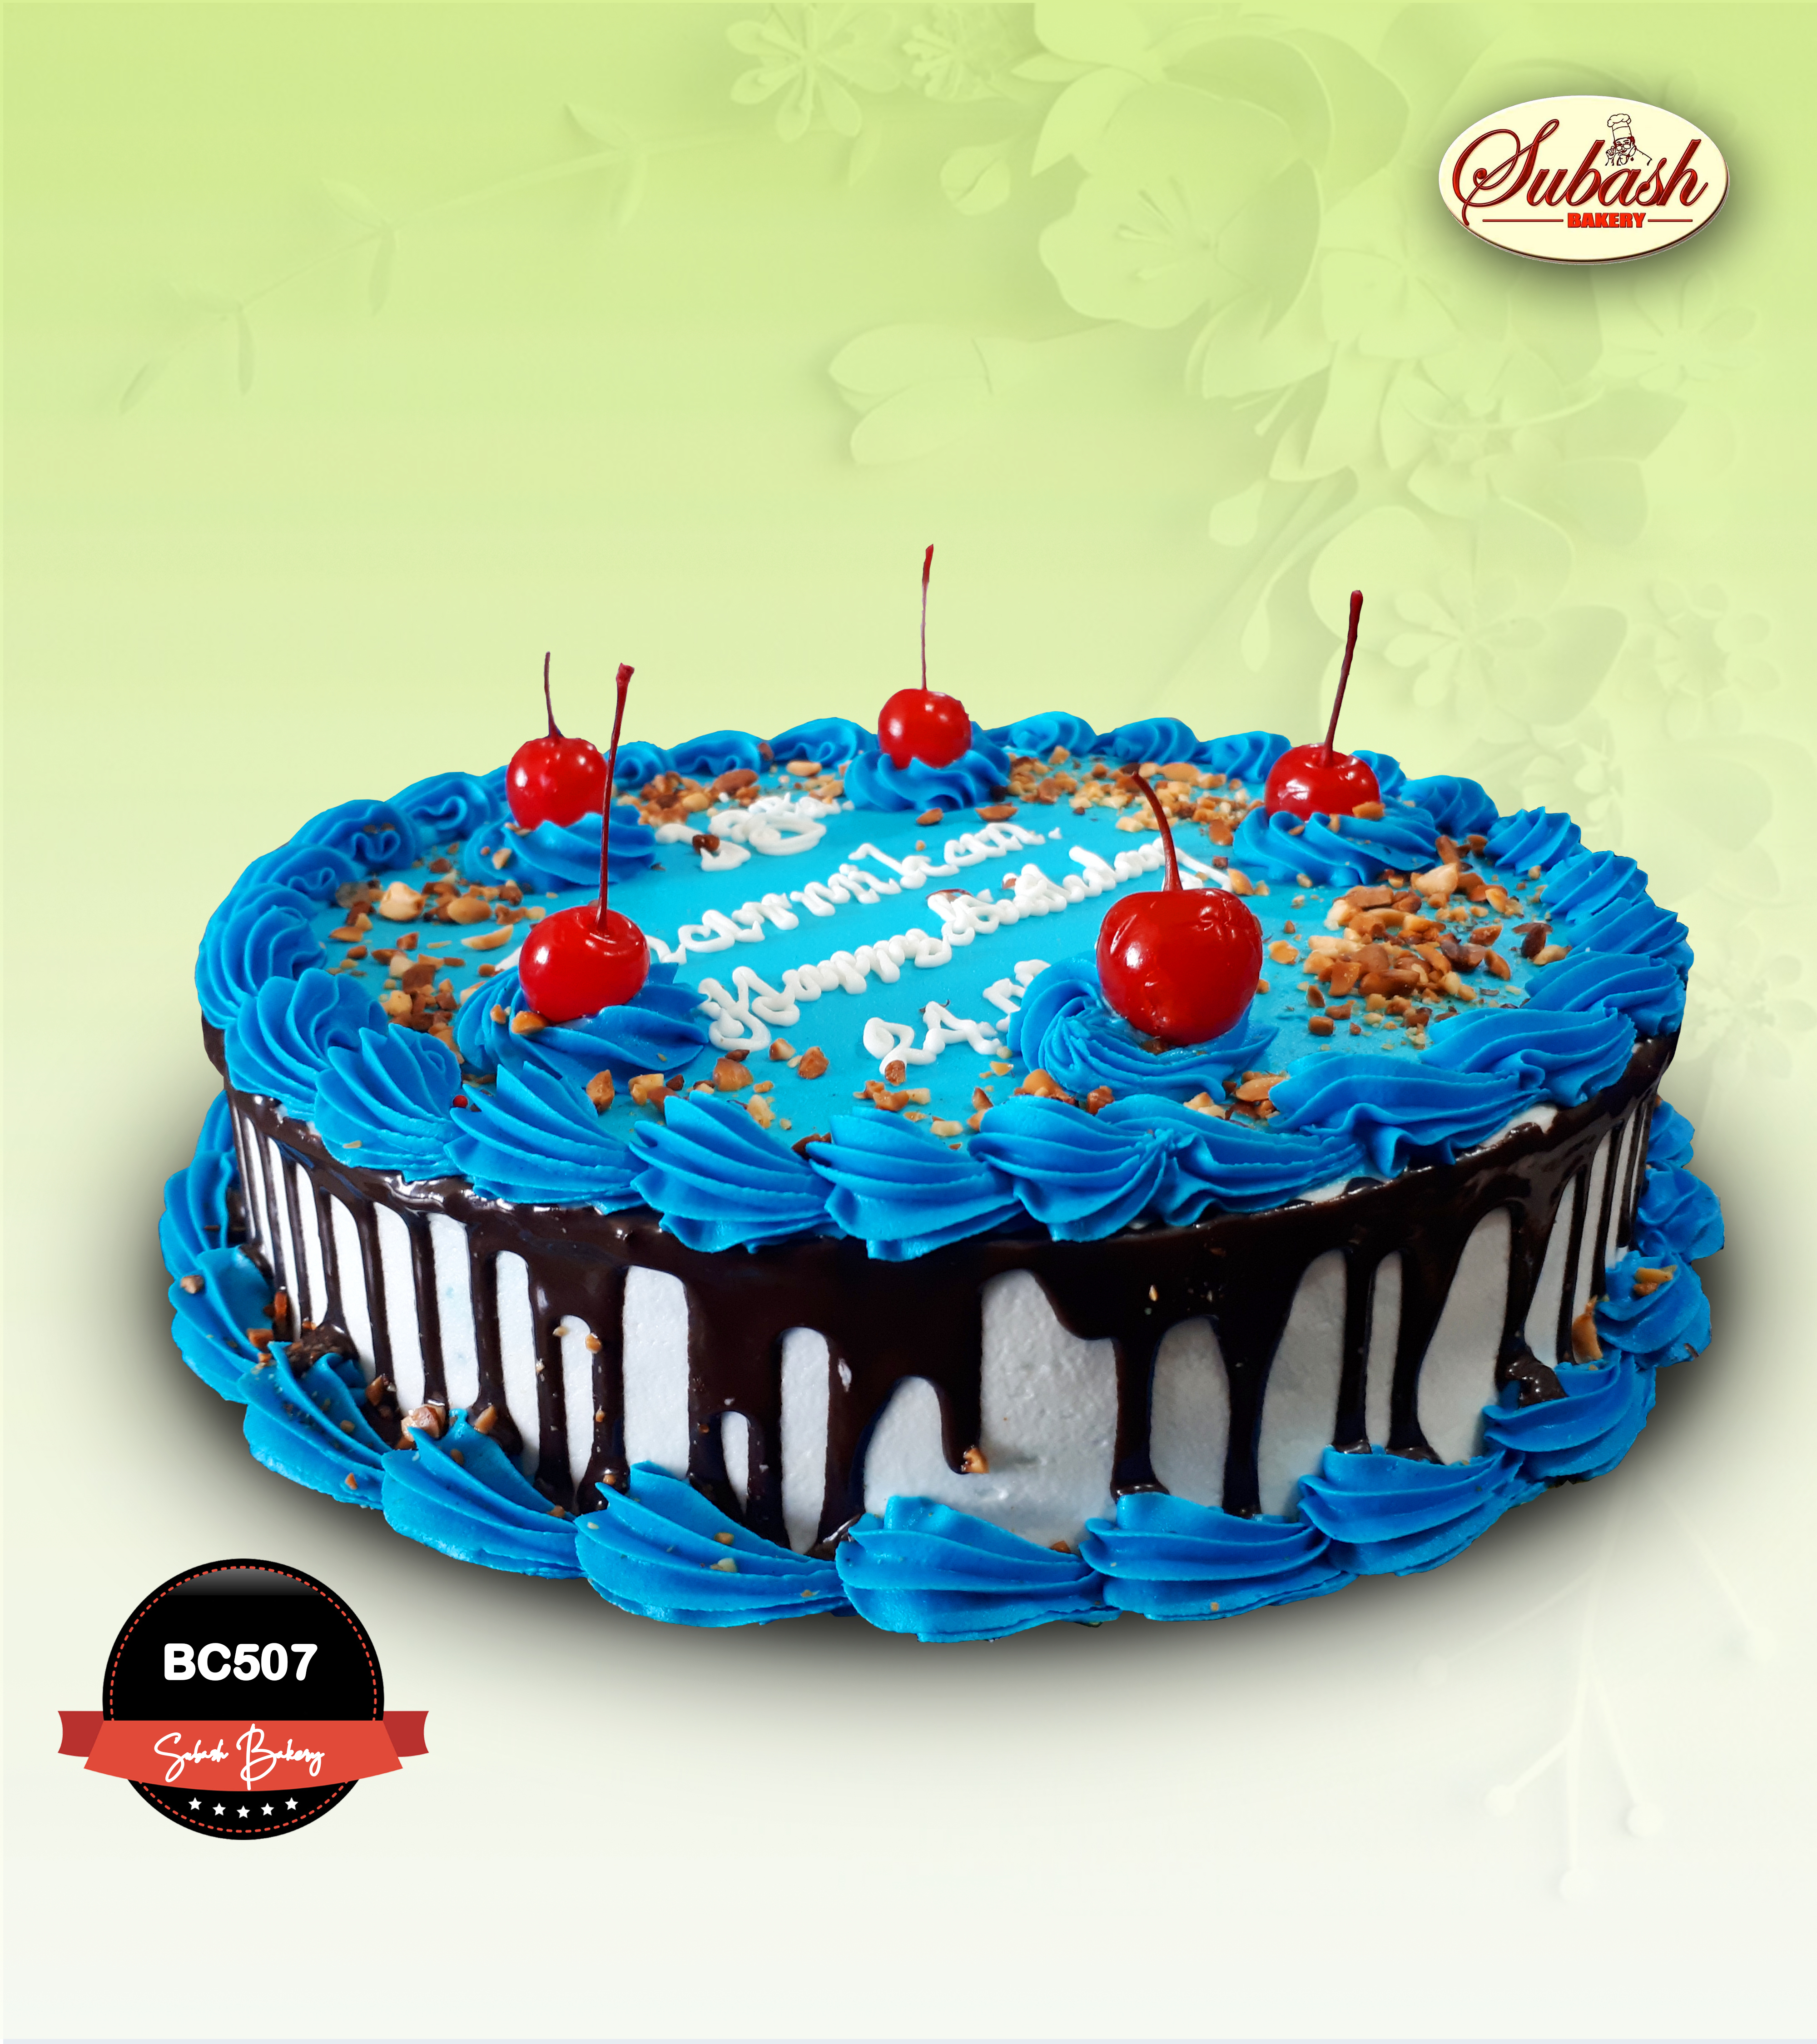 Chocolate Birthday cake